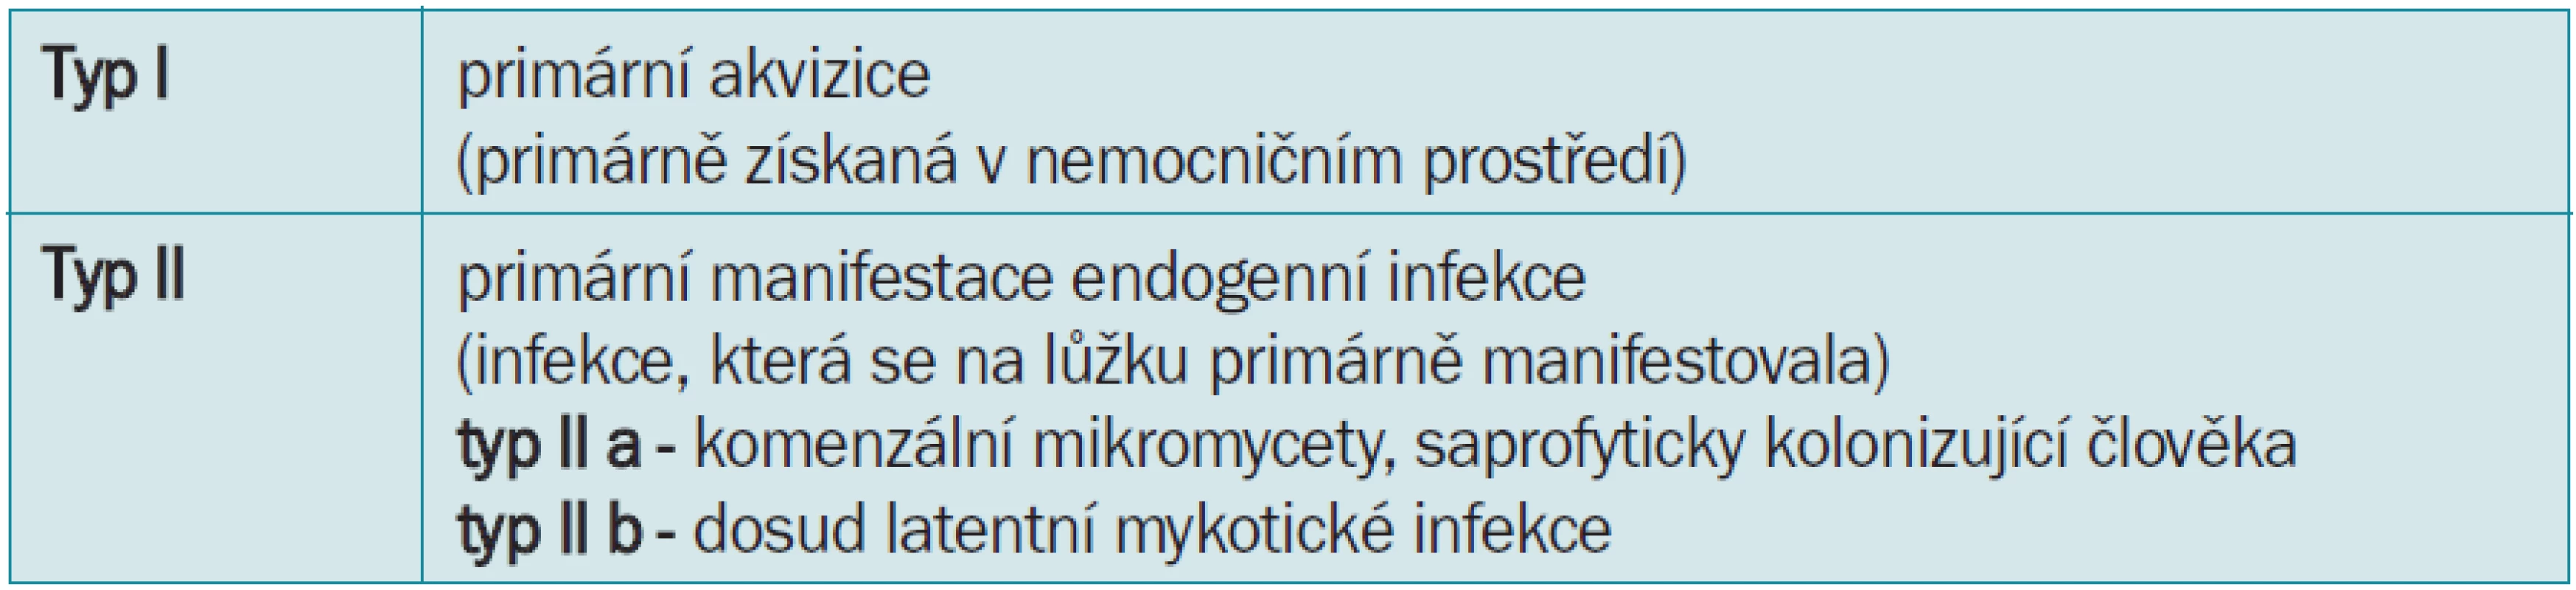 Klasifikace nozokomiálních mykotických infekcí.